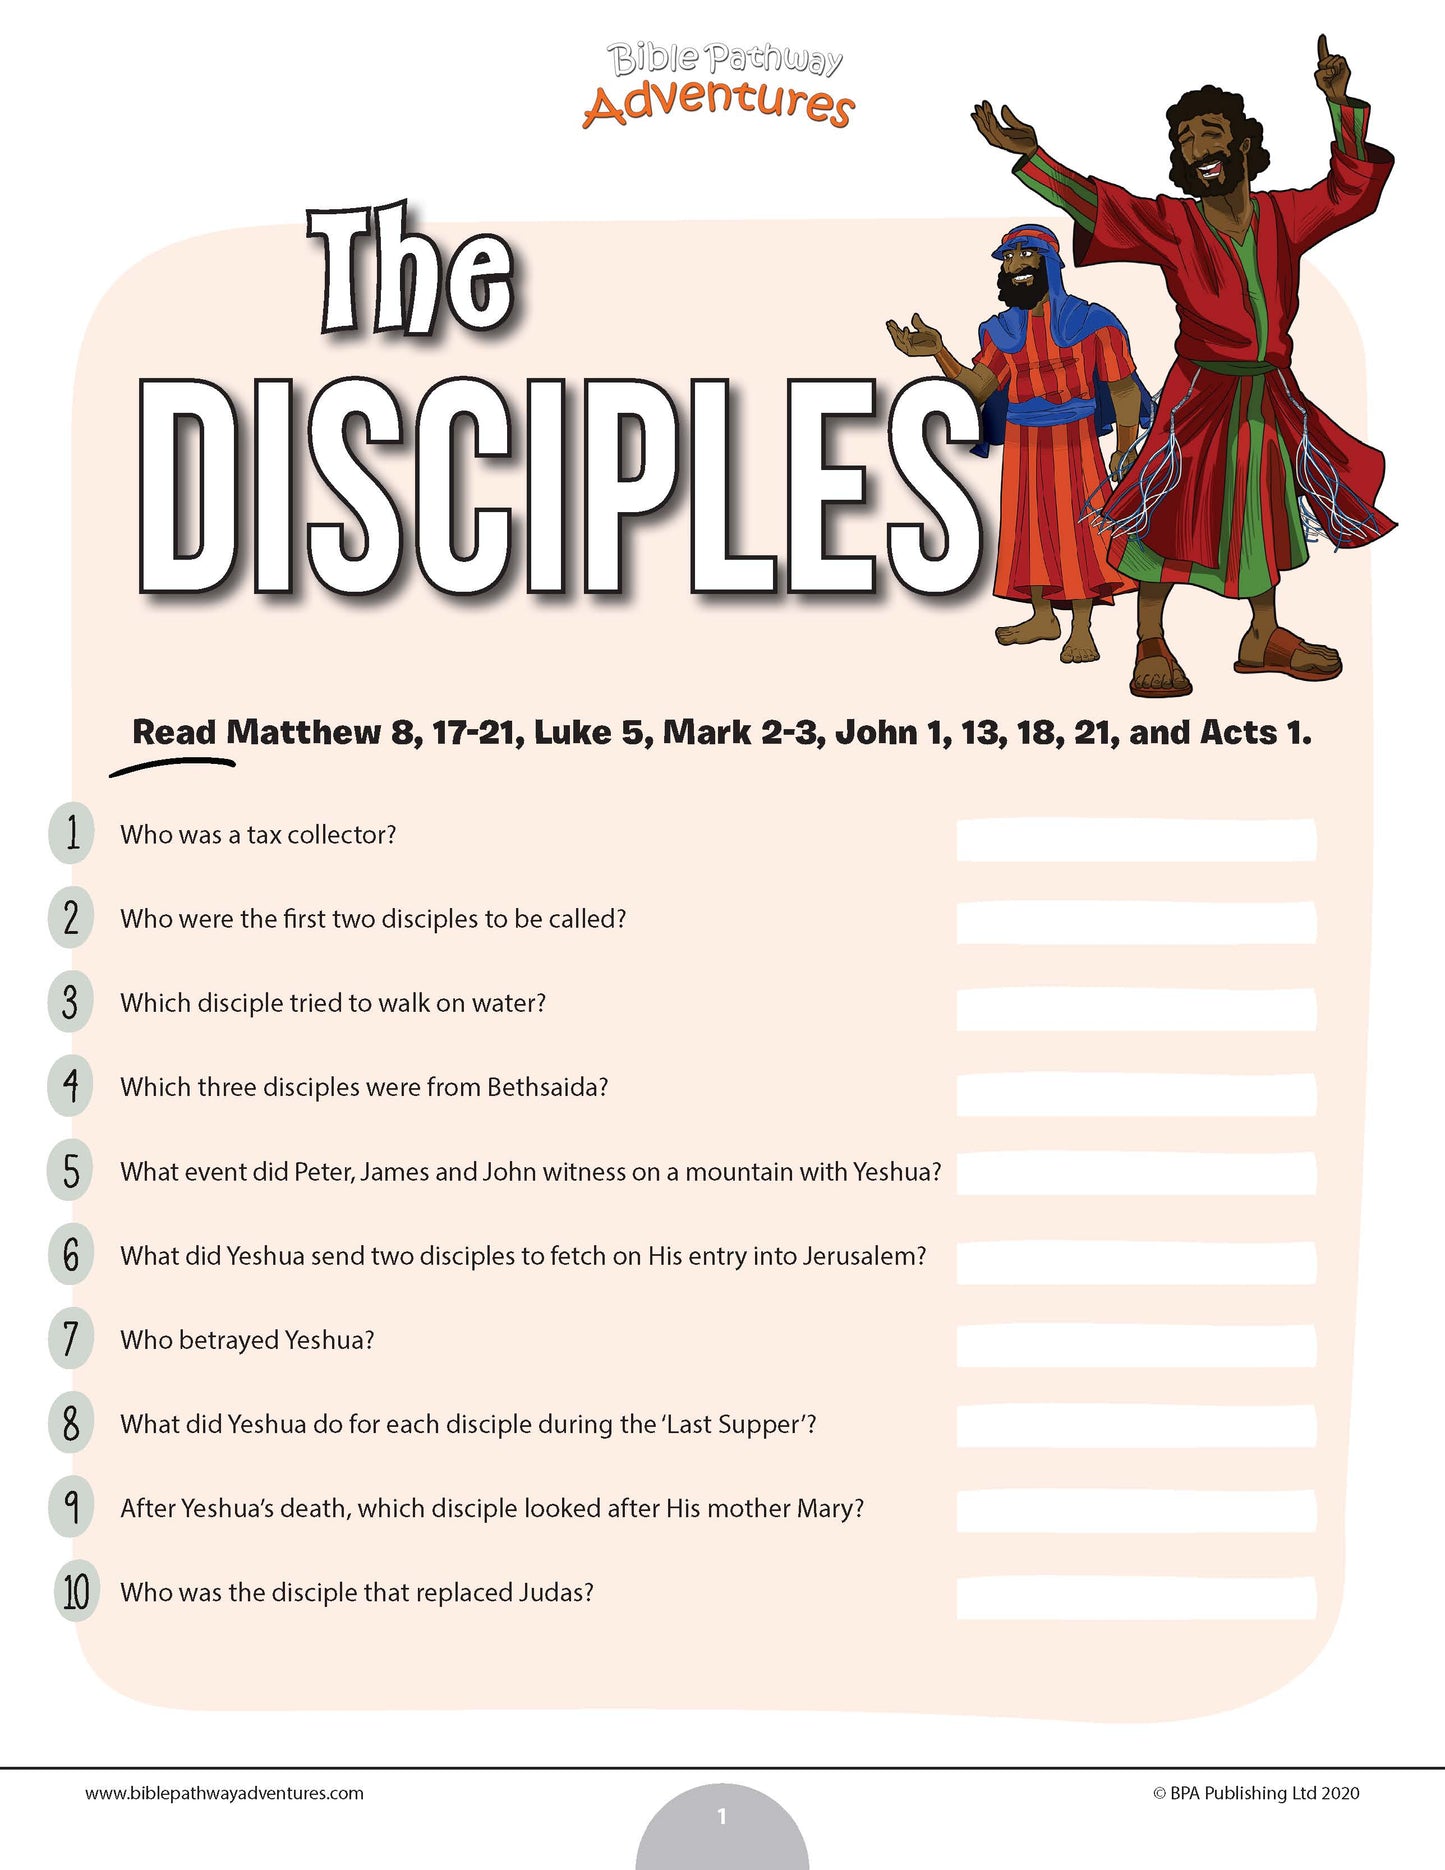 El cuestionario de los discípulos